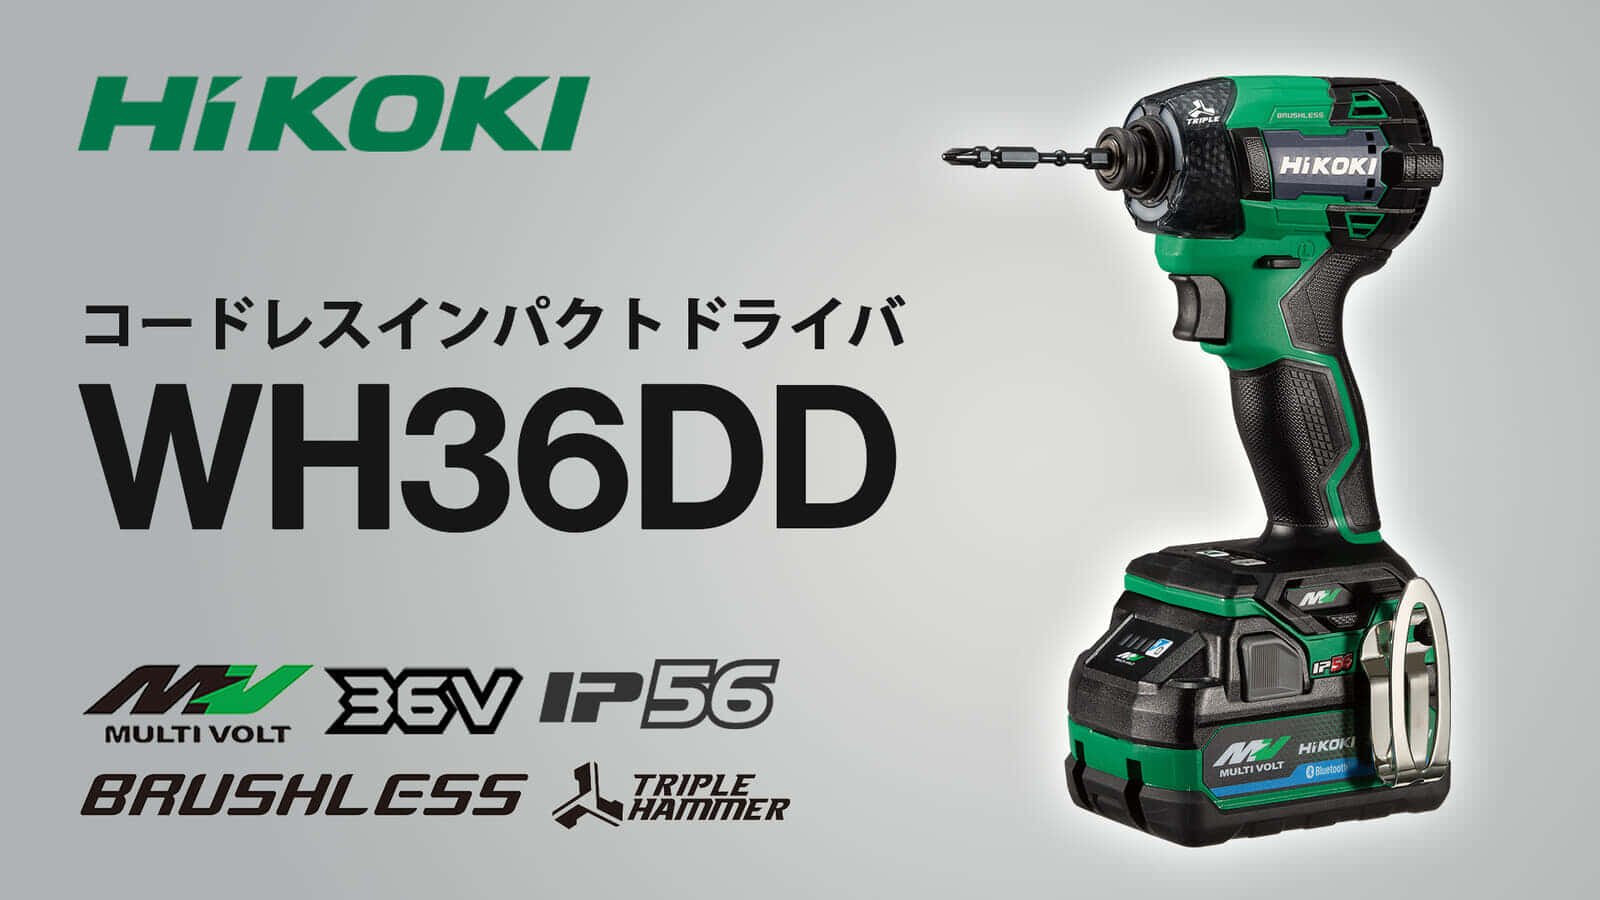 HiKOKI WH36DD コードレスインパクトドライバを発売、日立工機技術力の